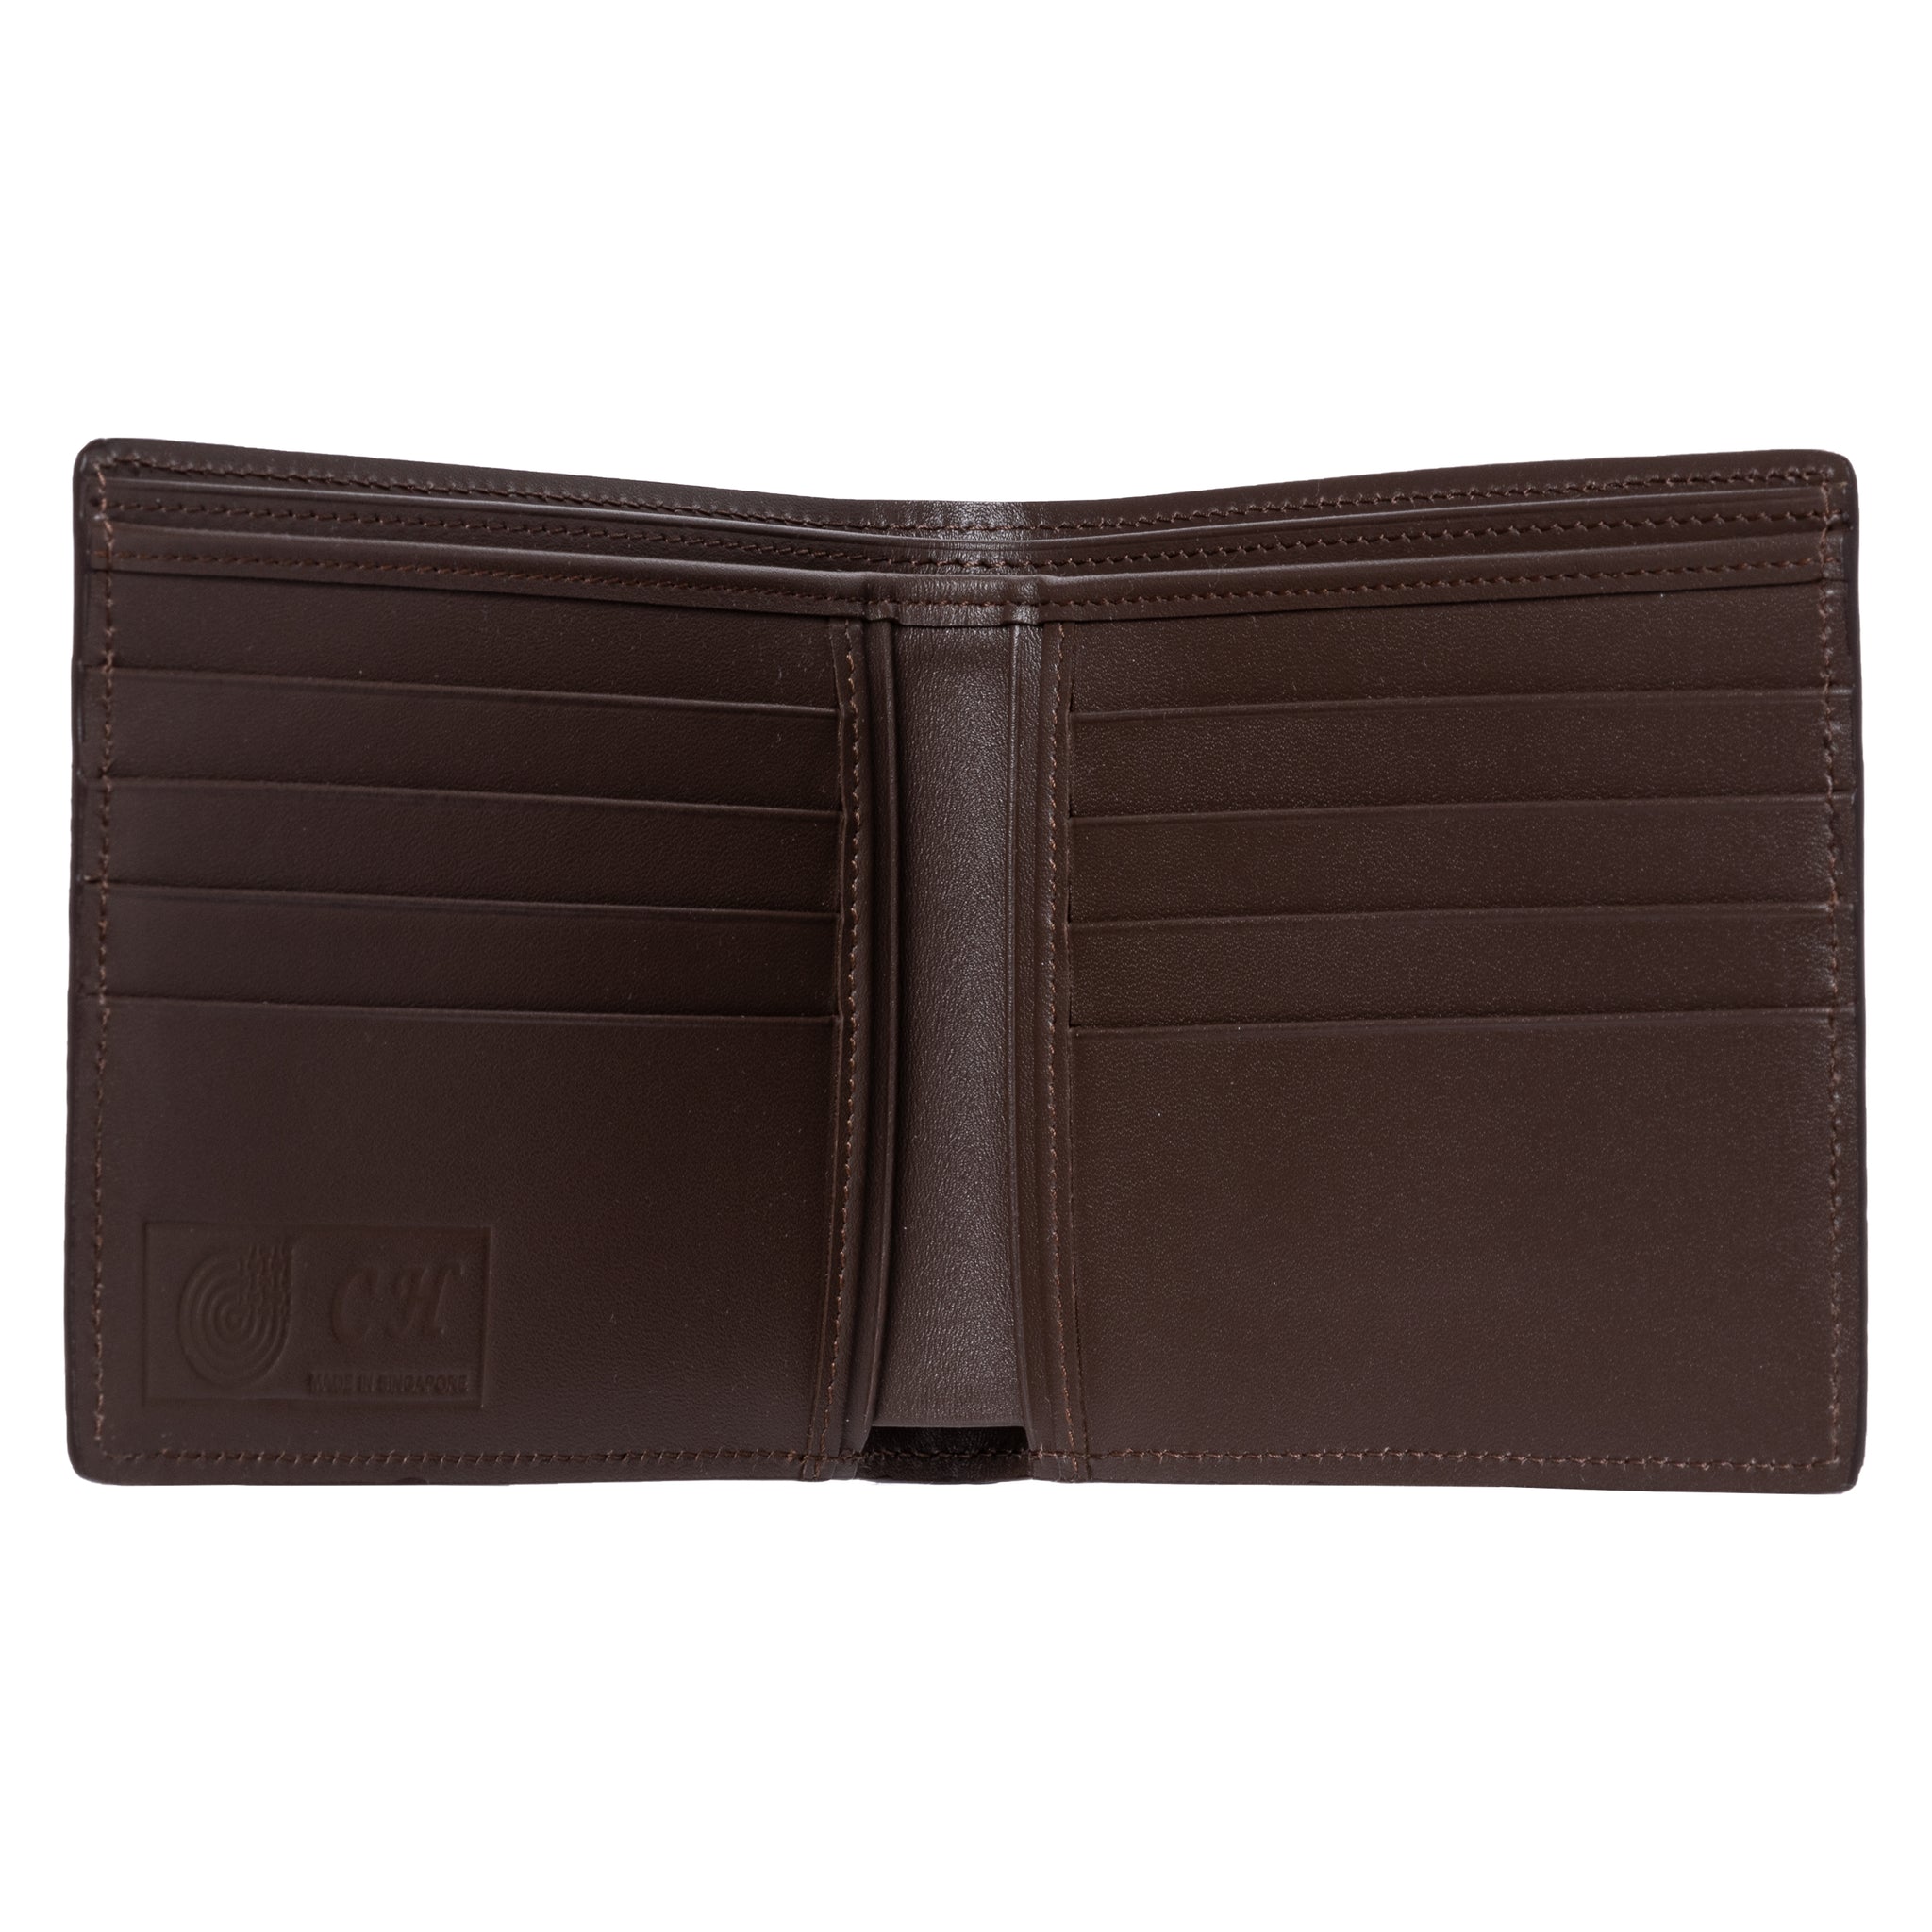 Bundle 4 - NMB 900 (Men's Wallet-Matte) + NSB 81401 (Ladies Card Holder-Glazed)